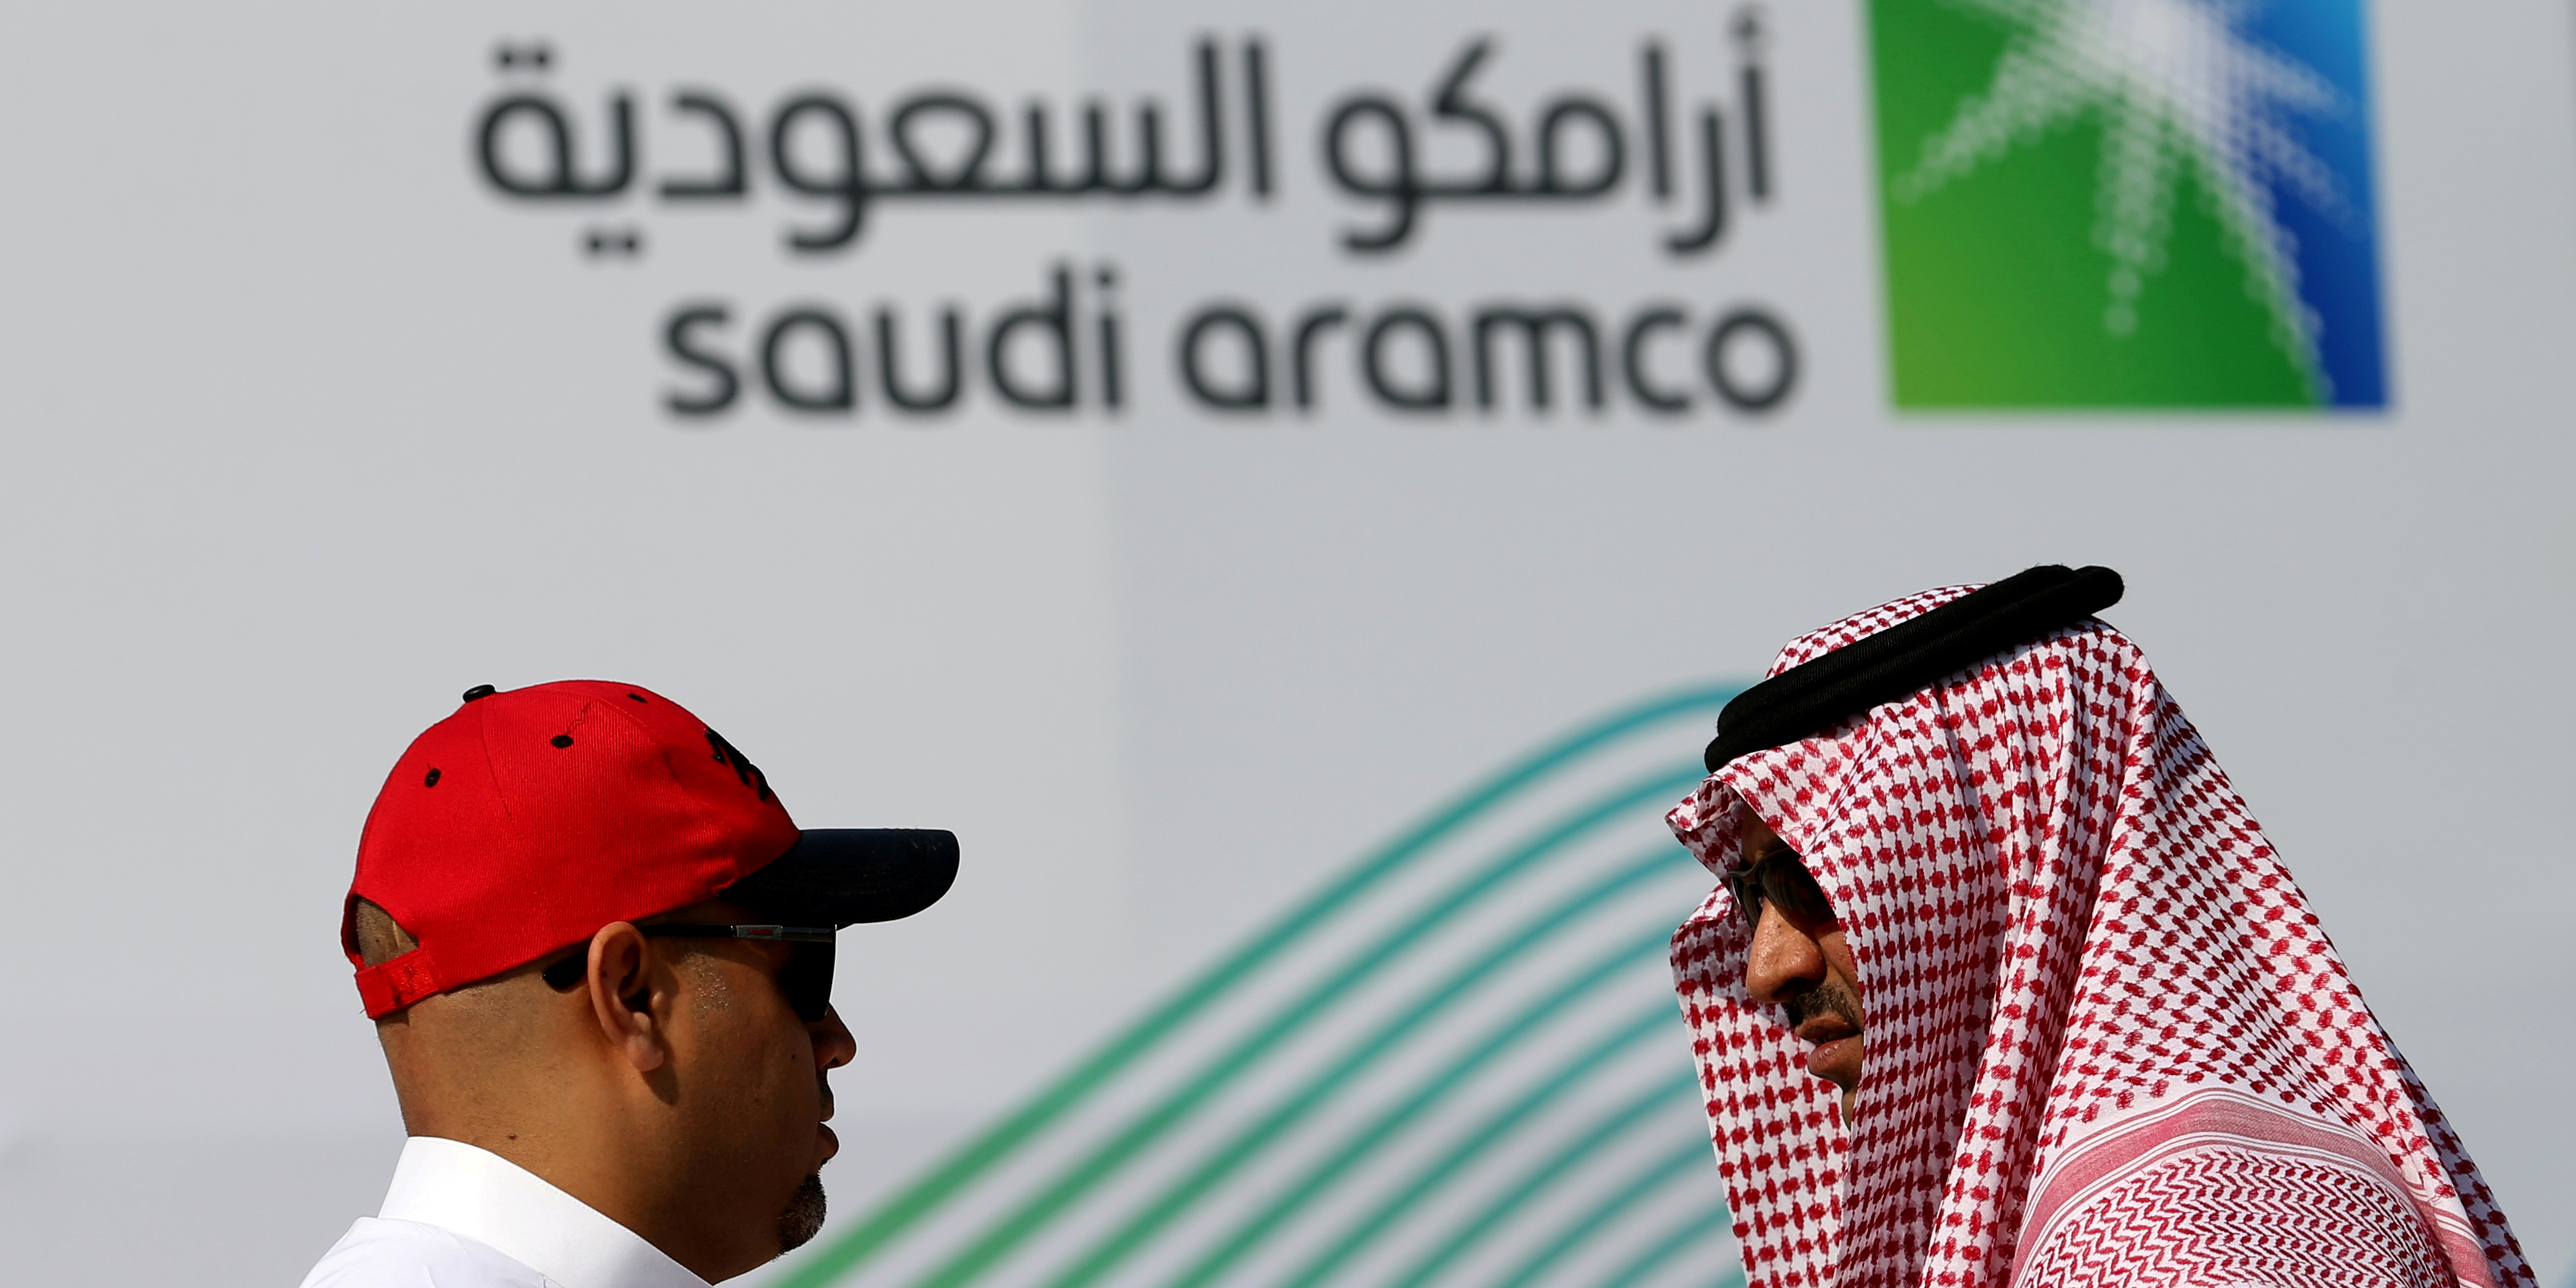 Pétrole: le géant Saudi Aramco intensifie sa production... et la guerre des prix